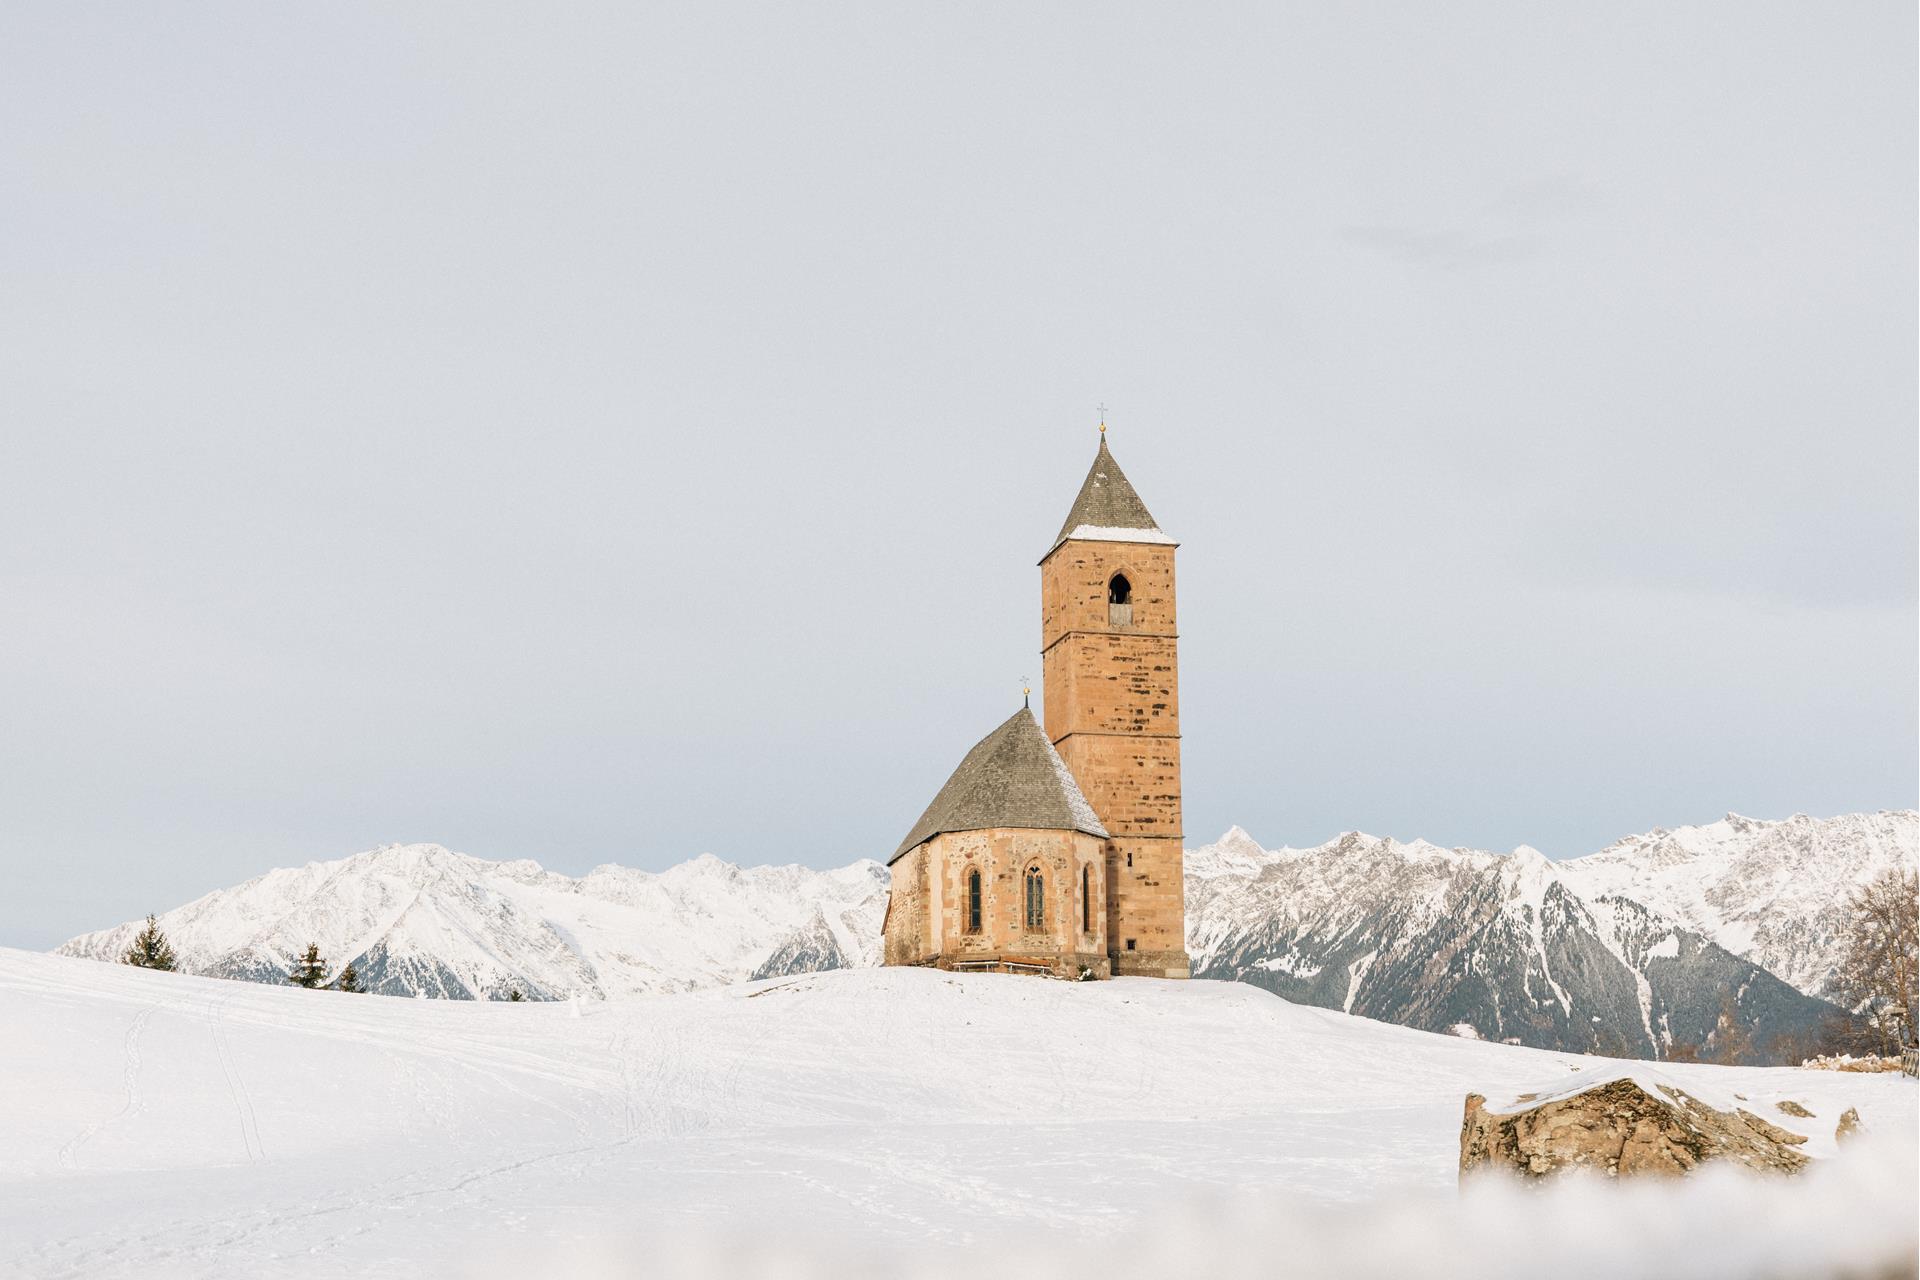 La chiesa di S. Caterina di Avelengo circondata da neve fresca. Sullo sfondo le bianche cime delle montagne in inverno. La suggestiva pietra di fronte alla chiesa.